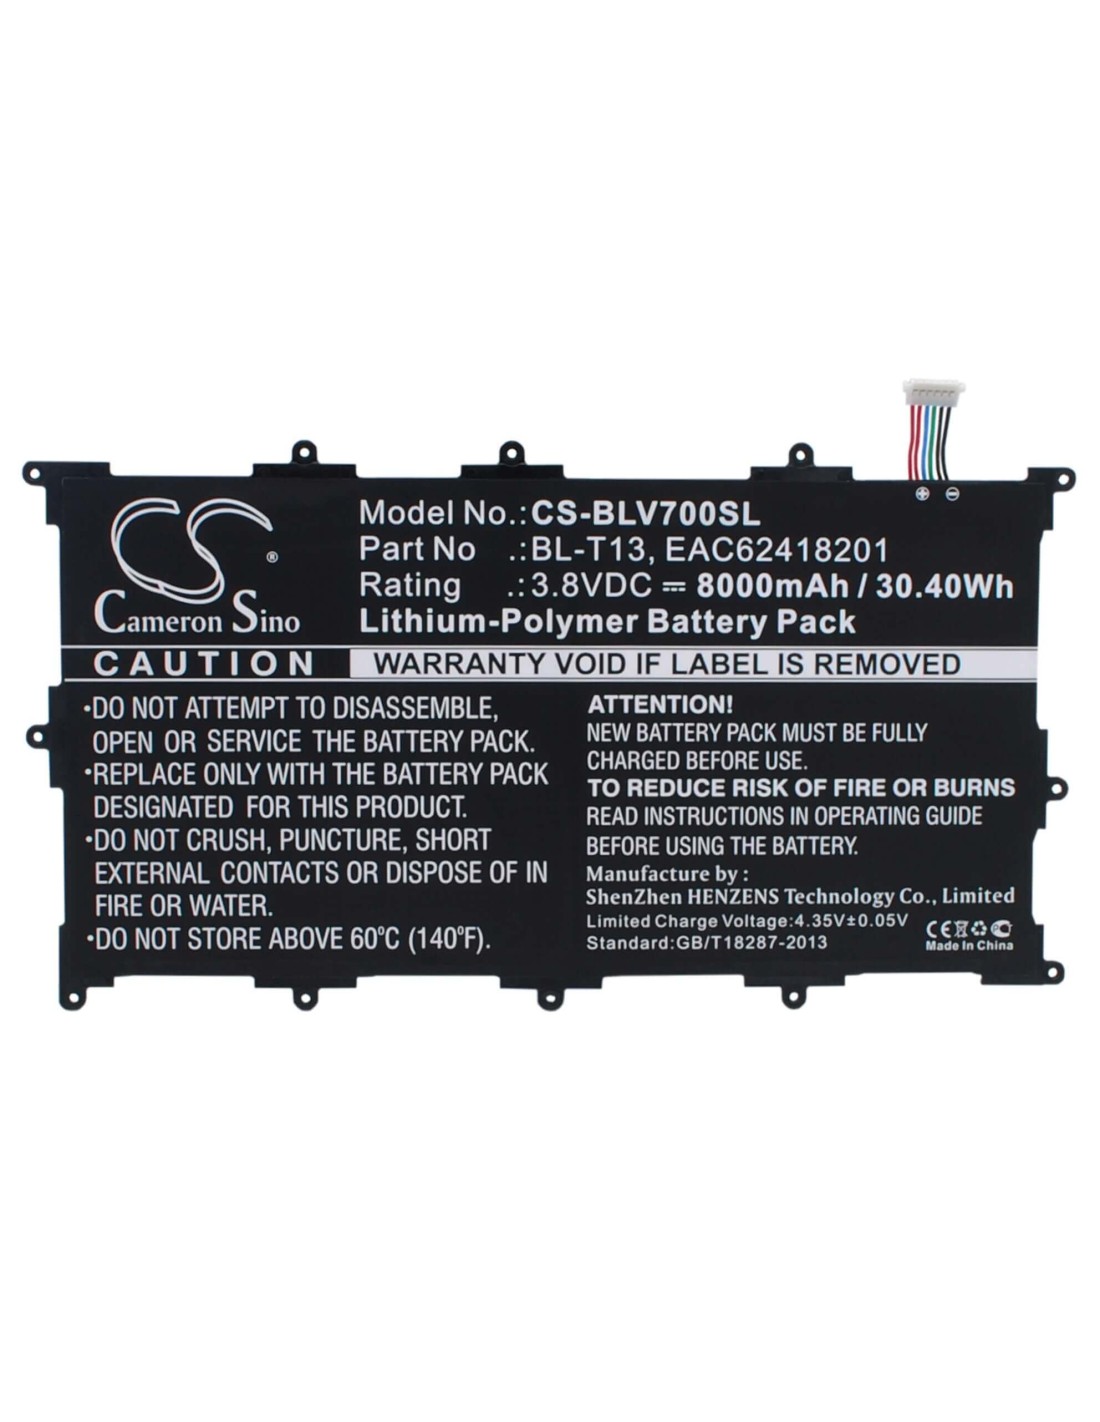 Battery for Lg G Pad Tablet 10.1 Inch, V700, Vk700 3.8V, 8000mAh - 30.40Wh